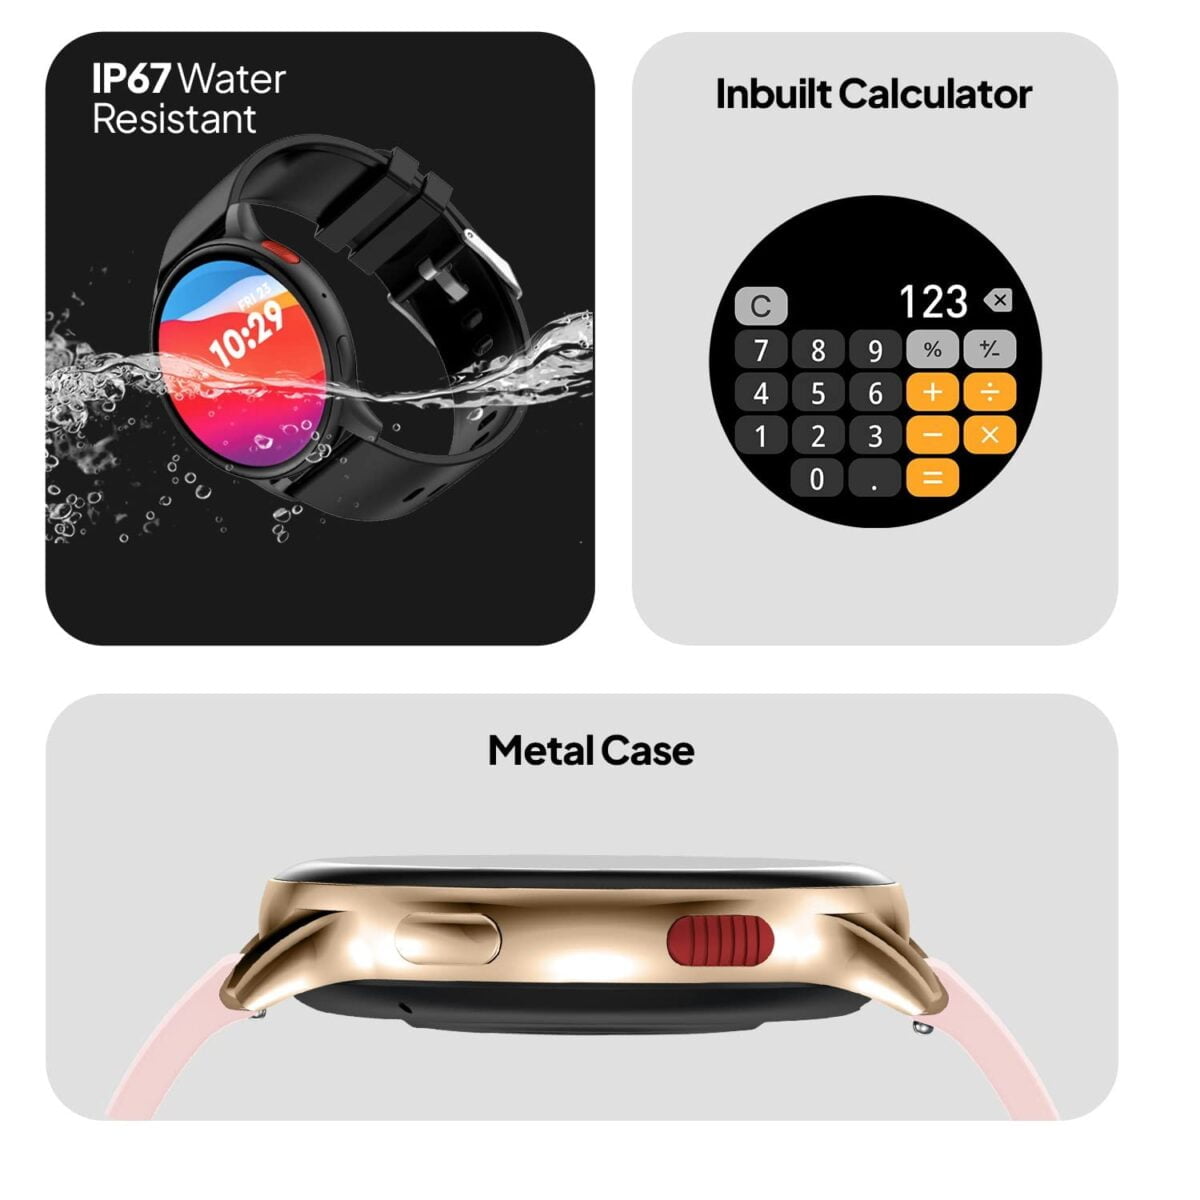 Fire boltt eclipse 1. 43 amoled smartwatch gold pink 6 fire-boltt eclipse 1. 43 inch amoled smartwatch